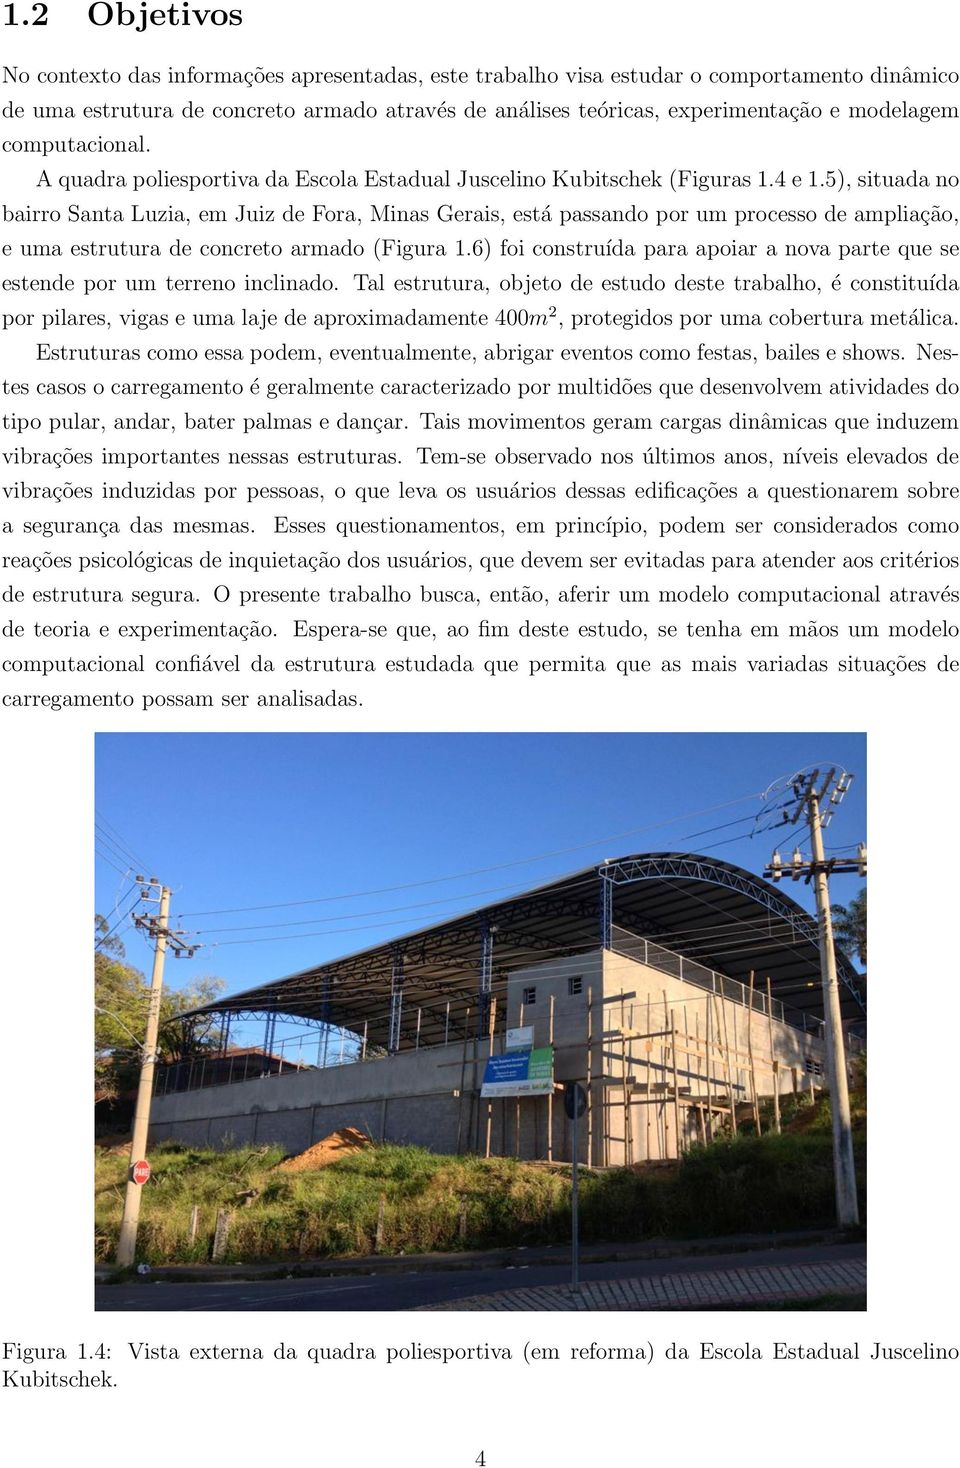 5), situada no bairro Santa Luzia, em Juiz de Fora, Minas Gerais, está passando por um processo de ampliação, e uma estrutura de concreto armado (Figura 1.